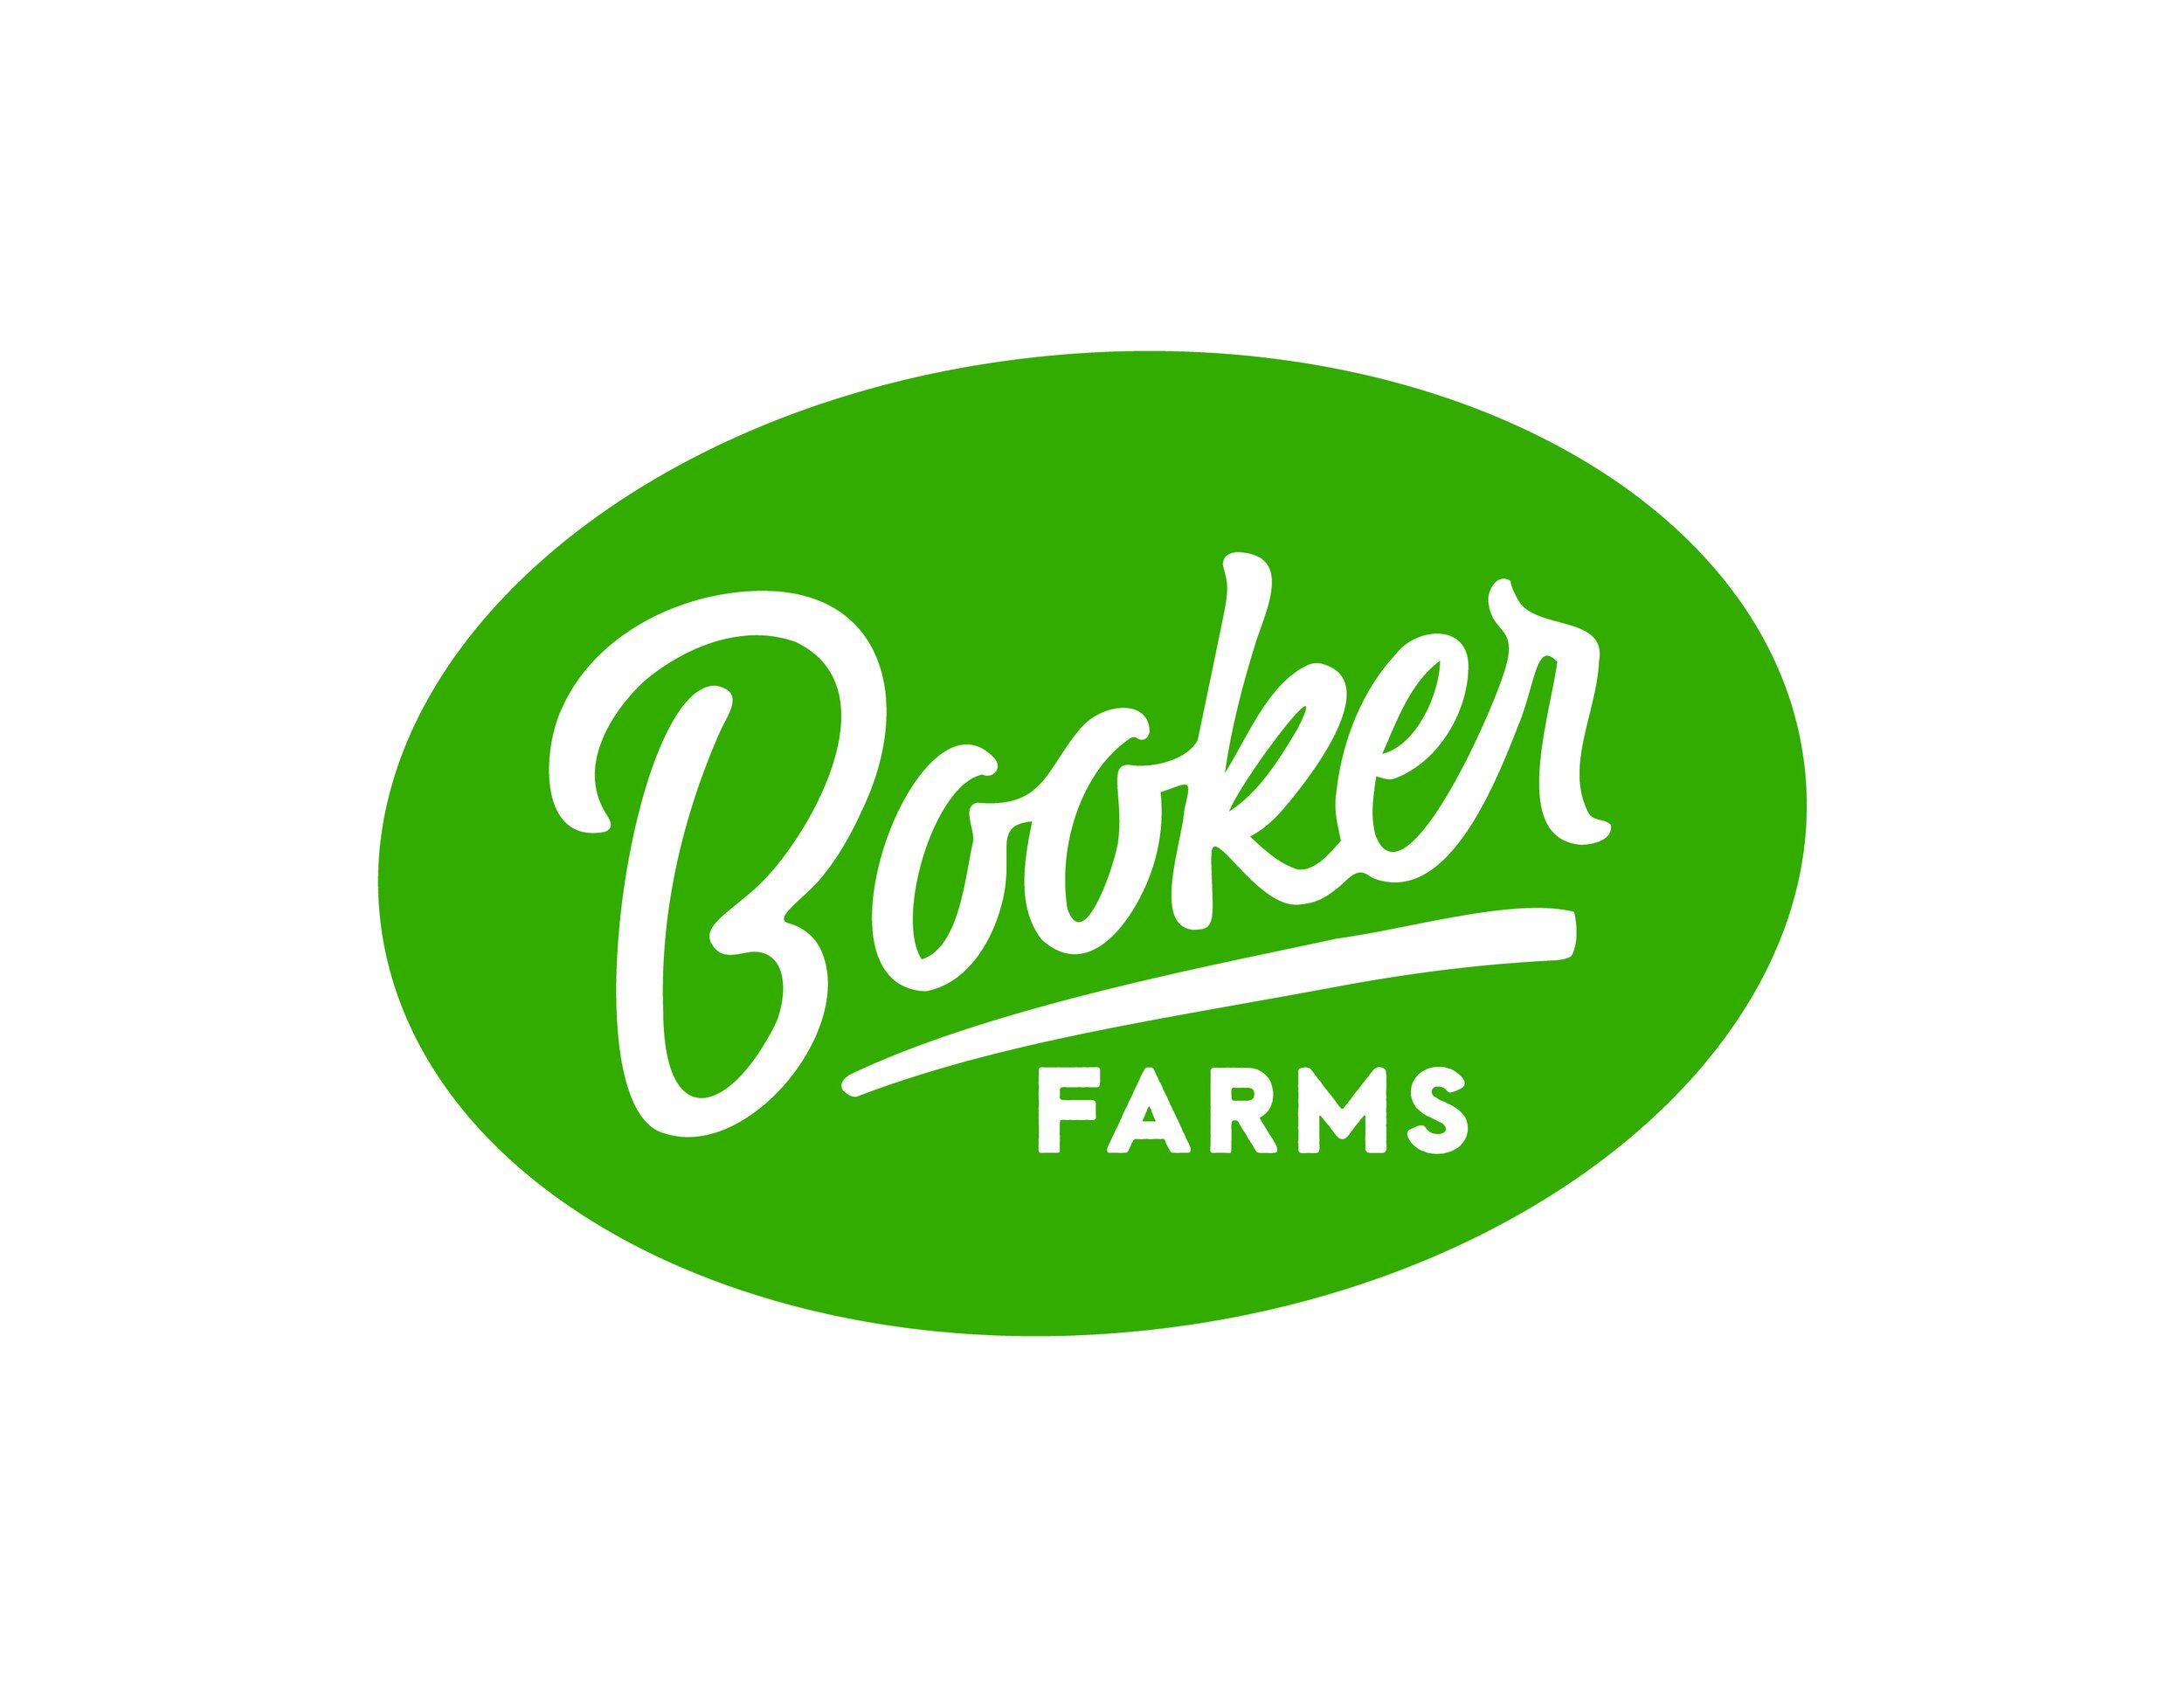 Booker Farms_AltLogo_Green-01.jpg